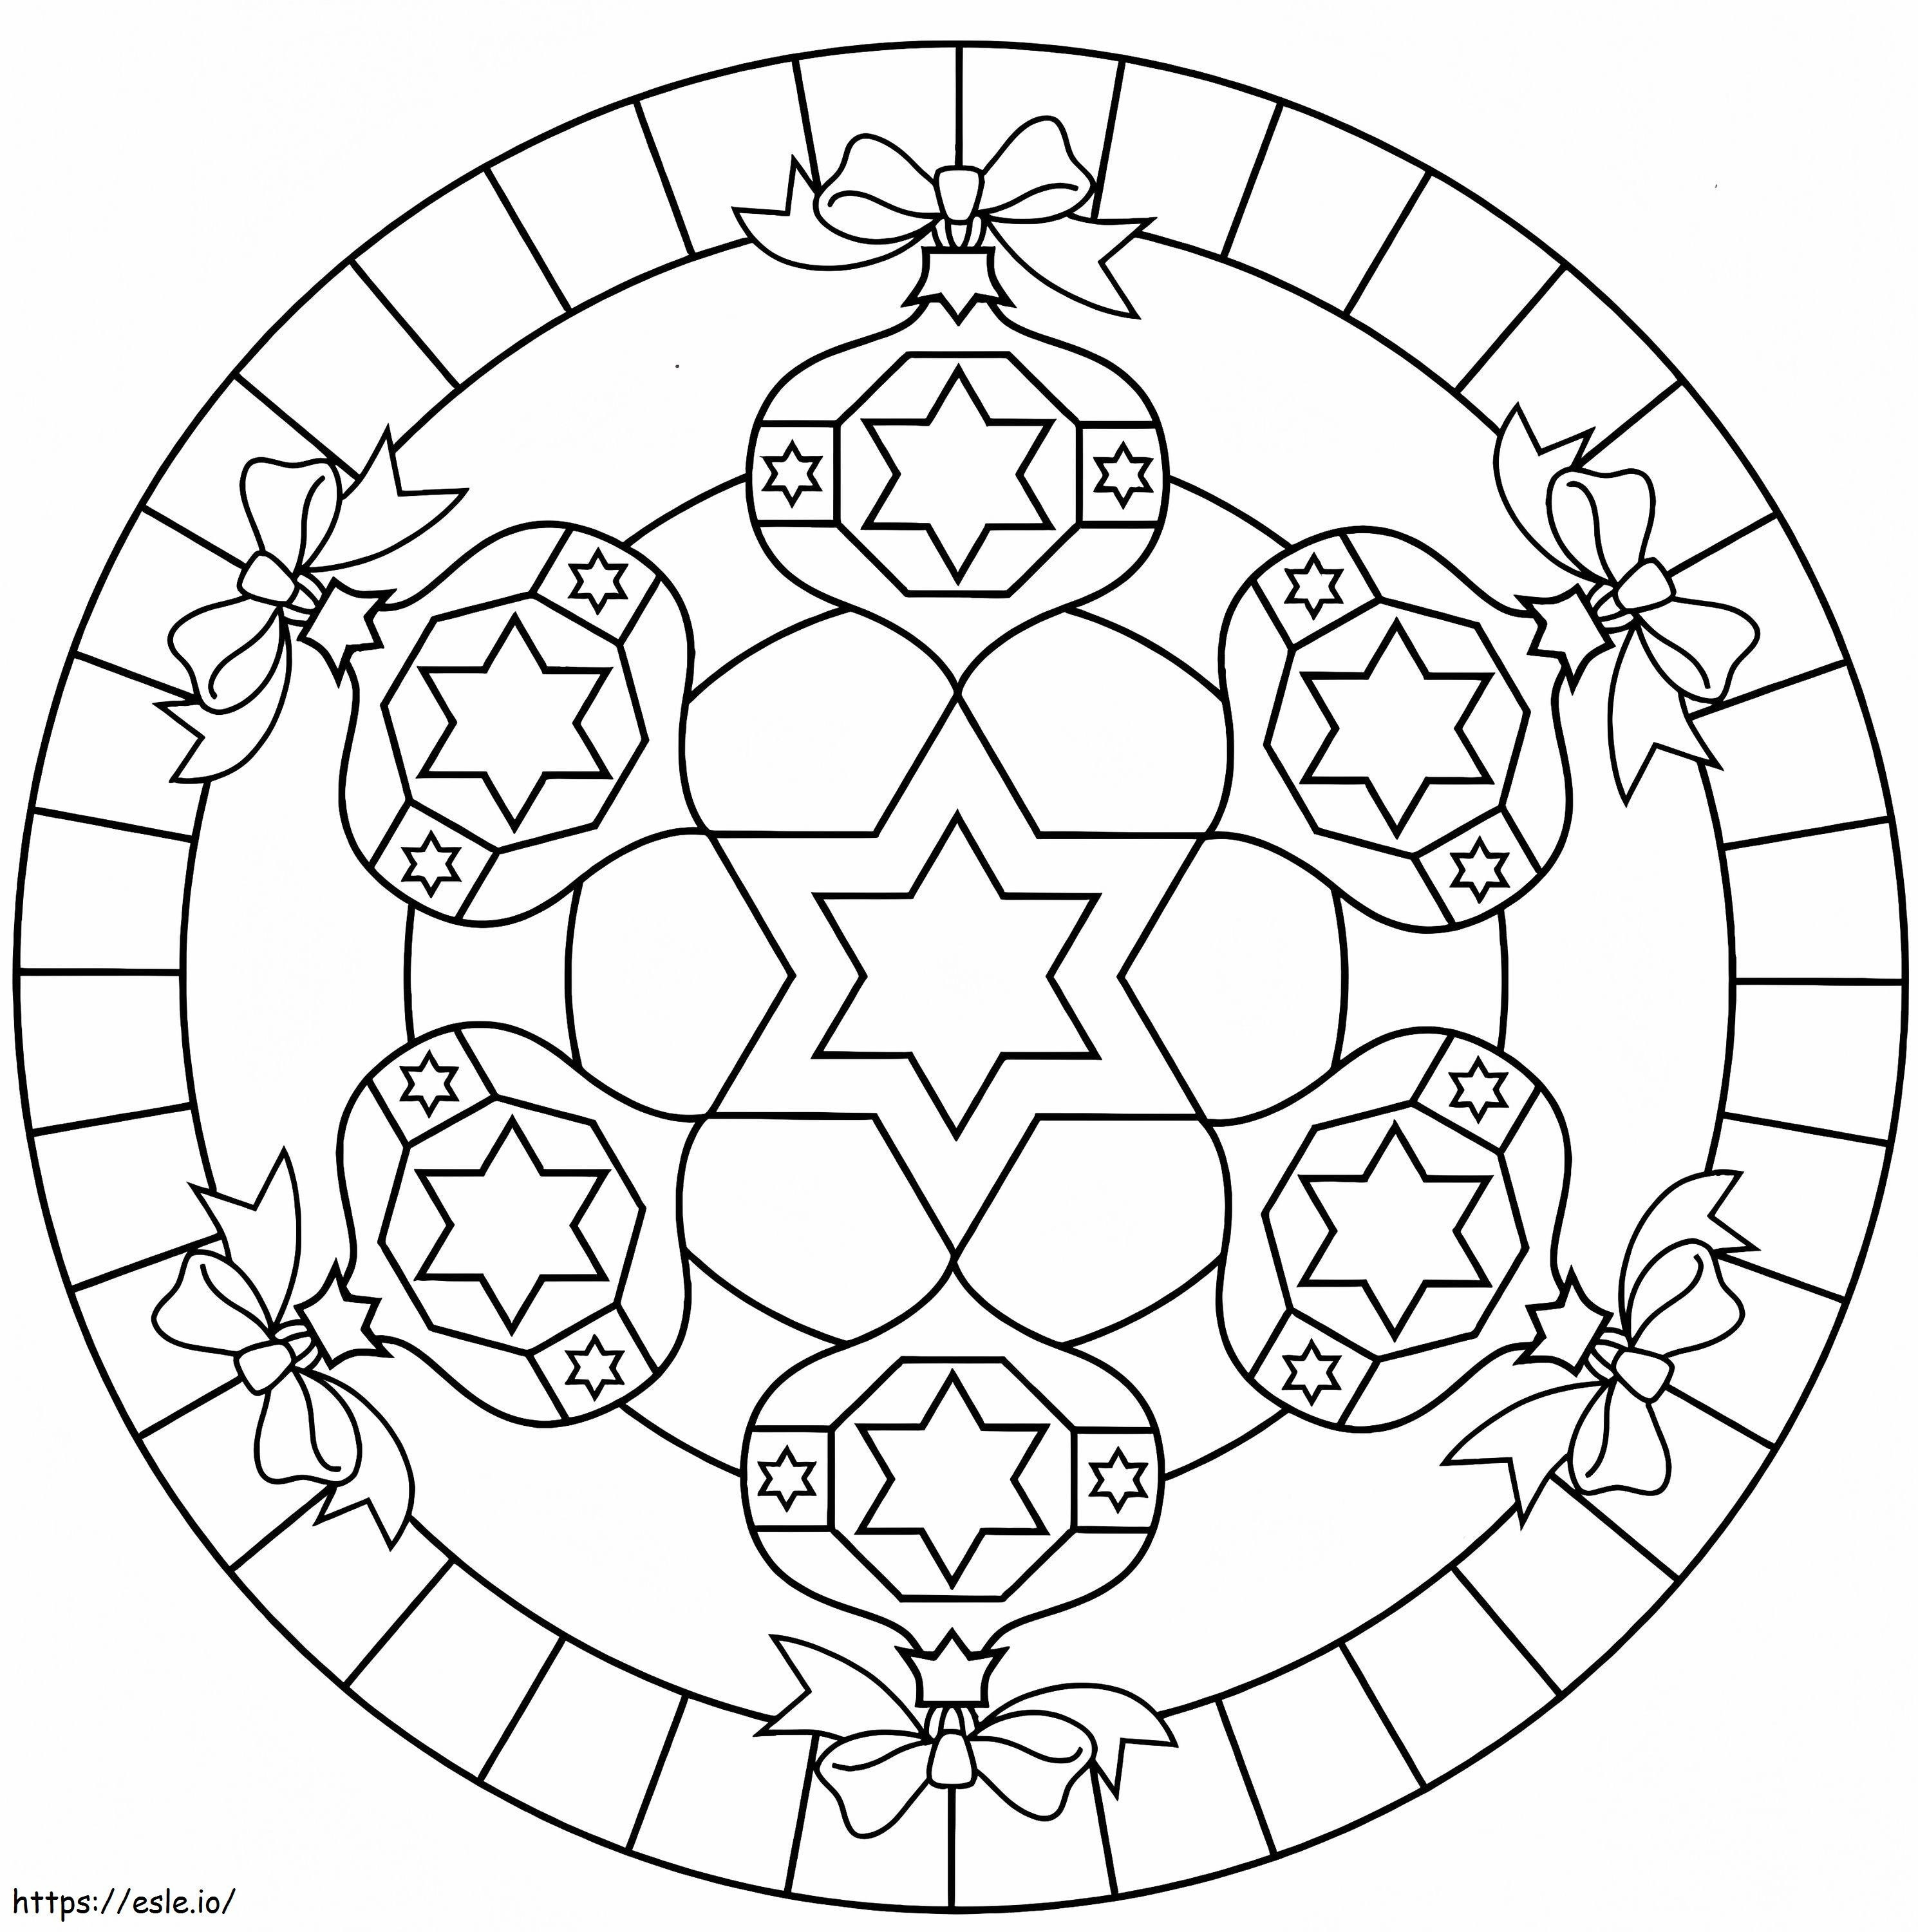 Mandala Con Hexagramas para colorear